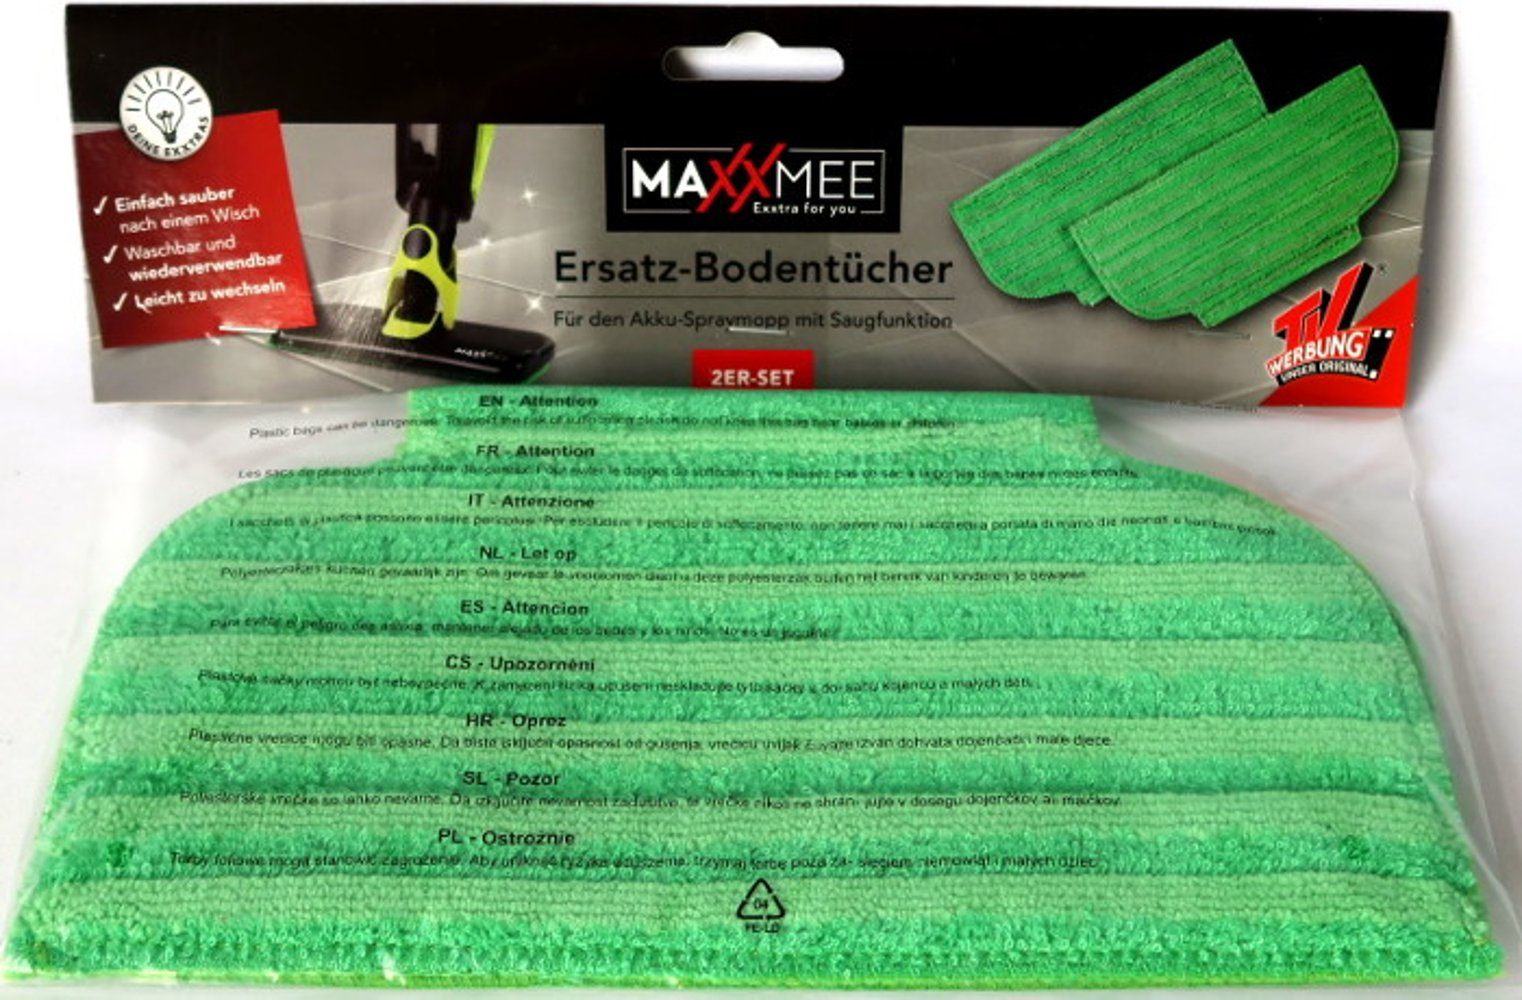 2er Wischtuch Set mit Saugfunktion, Ersatz-Bodentücher grün Akku-Spraymopp Wischmopp in Bodentuch MAXXMEE für